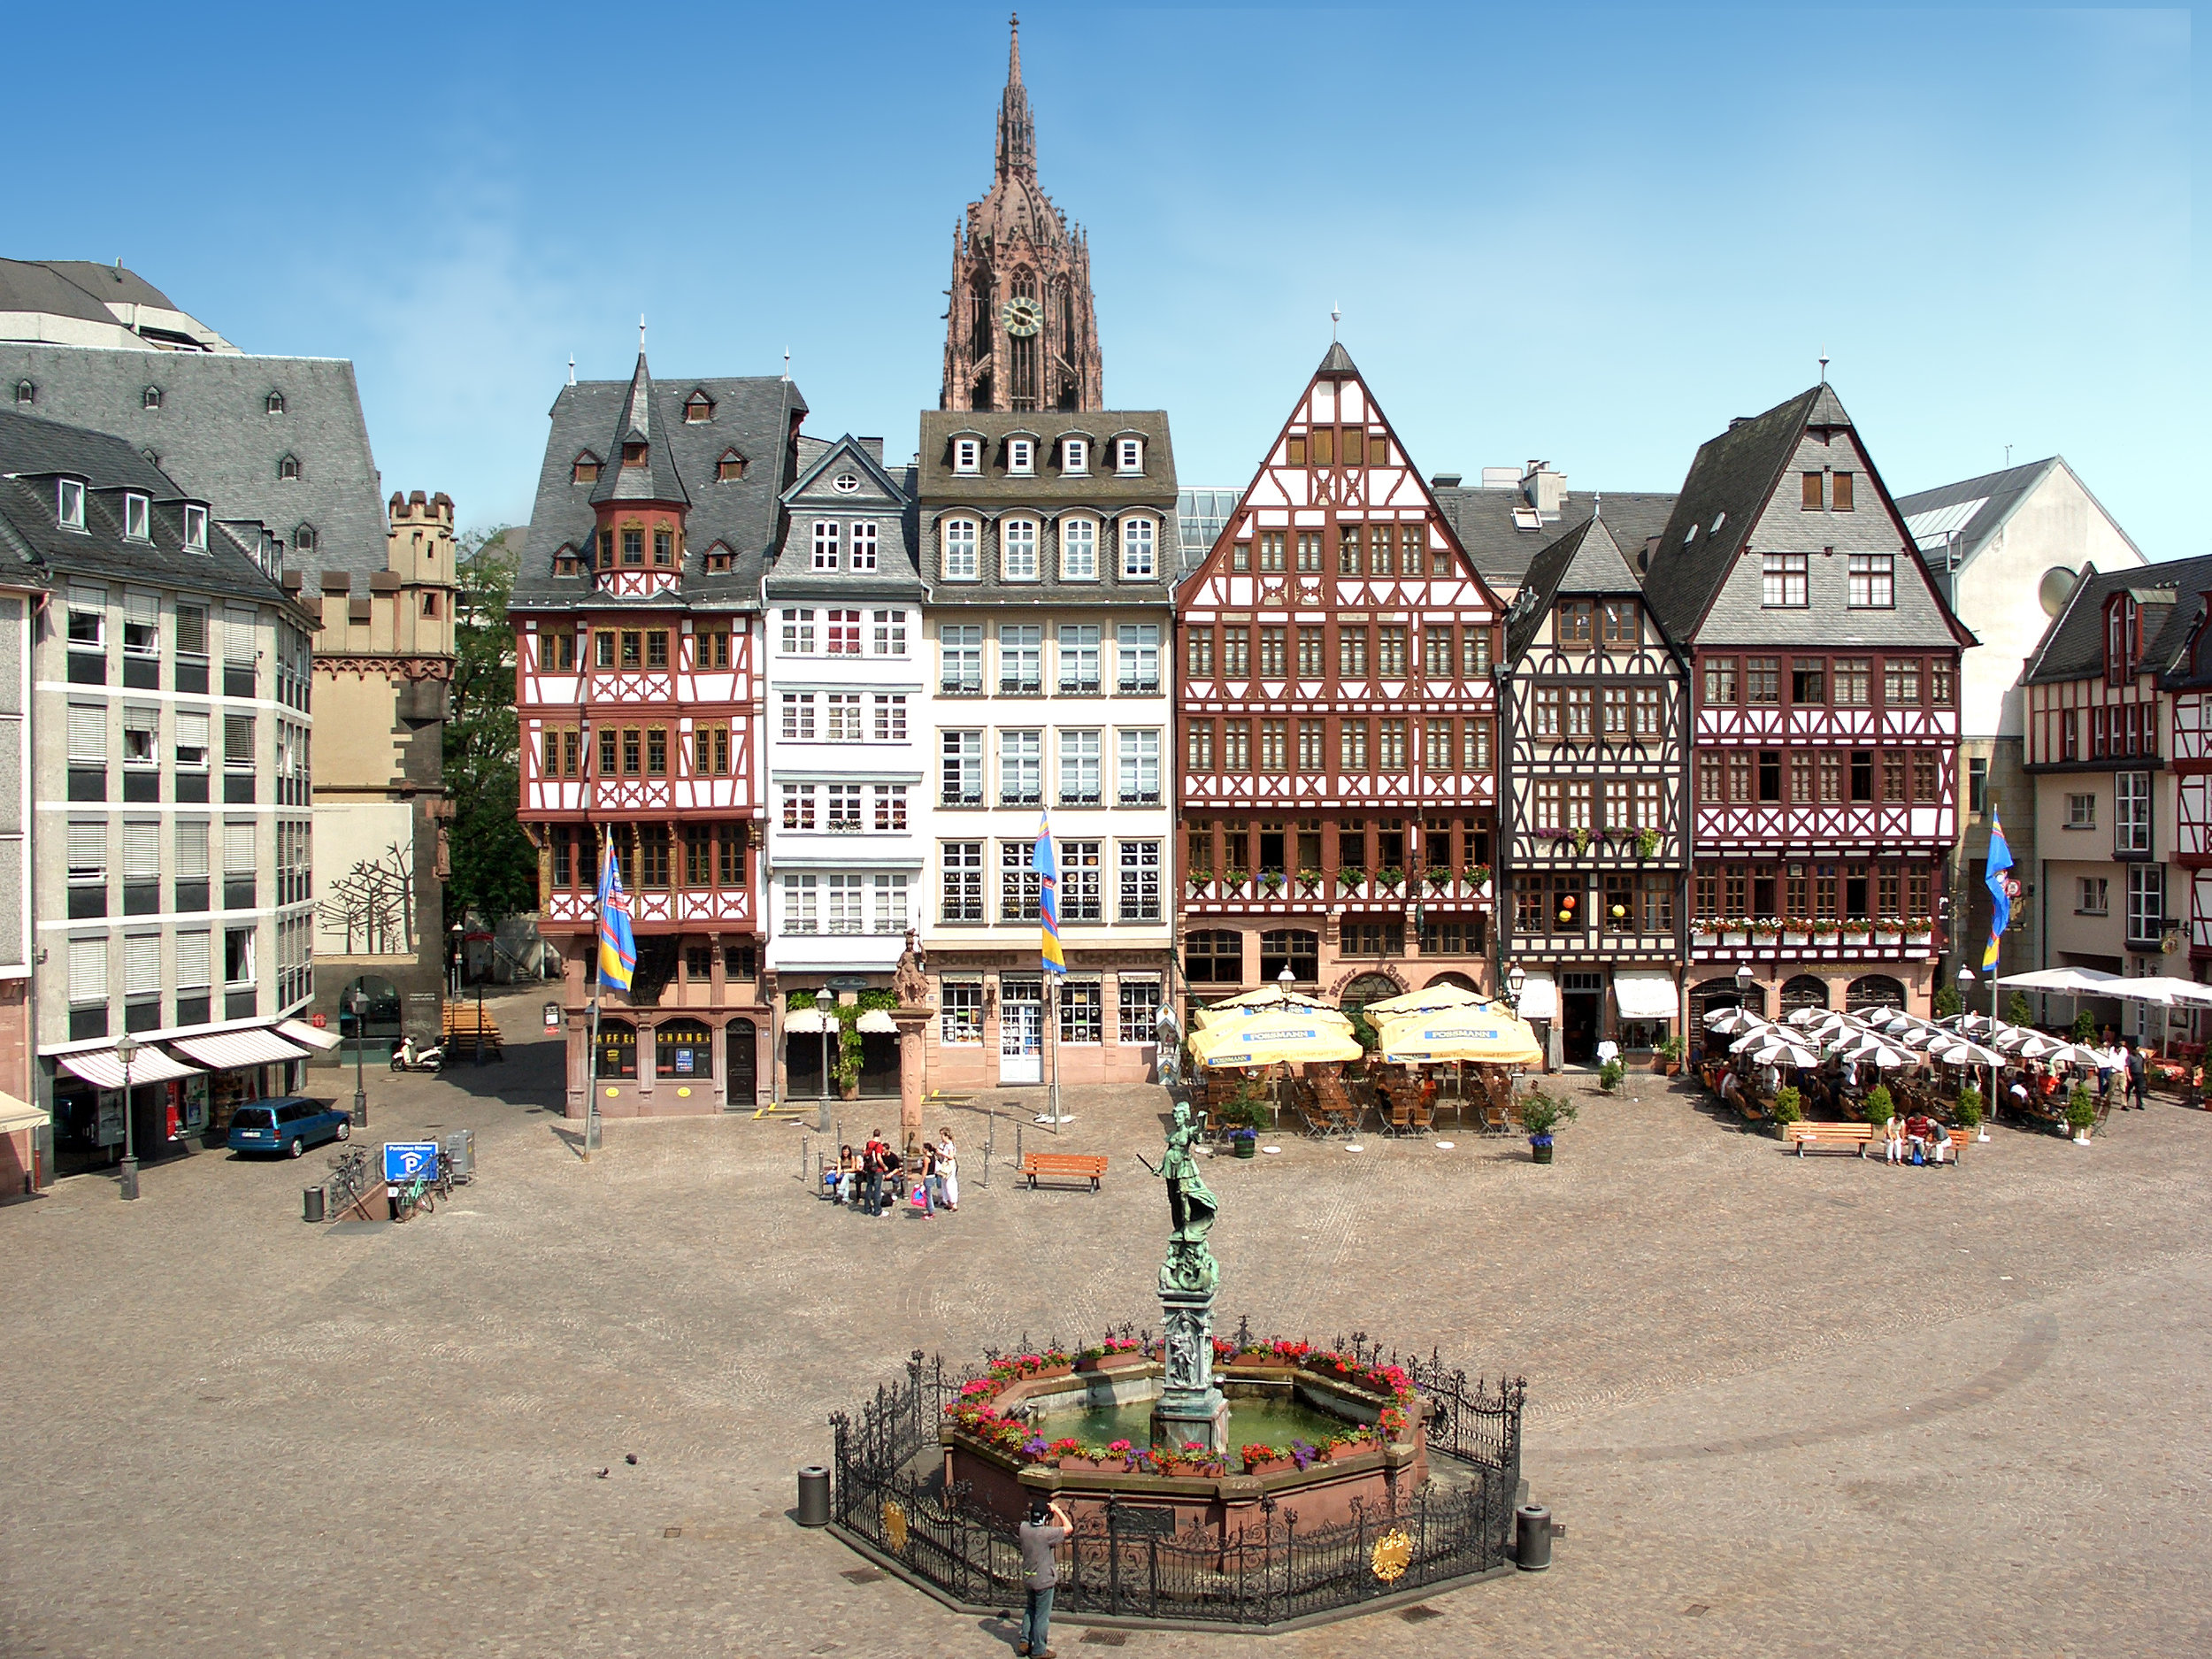 Römer-centro-historico-de-Frankfurt.jpg